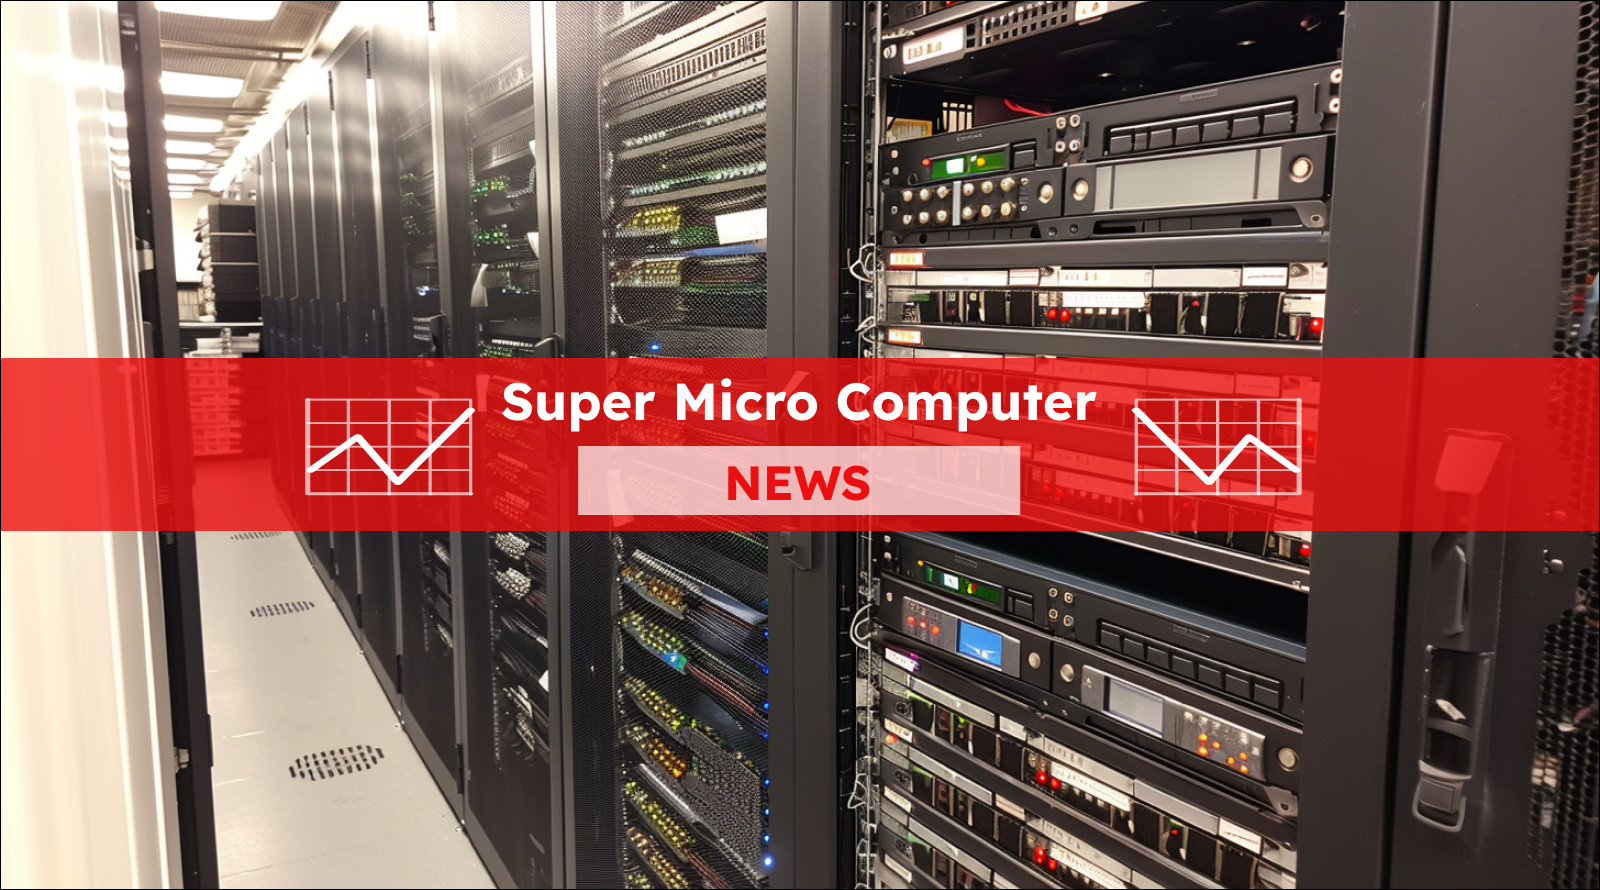 Eine Reihe von Serverschränken in einem Datenzentrum, über dem Bild ist ein Super Micro Computer NEWS-Banner